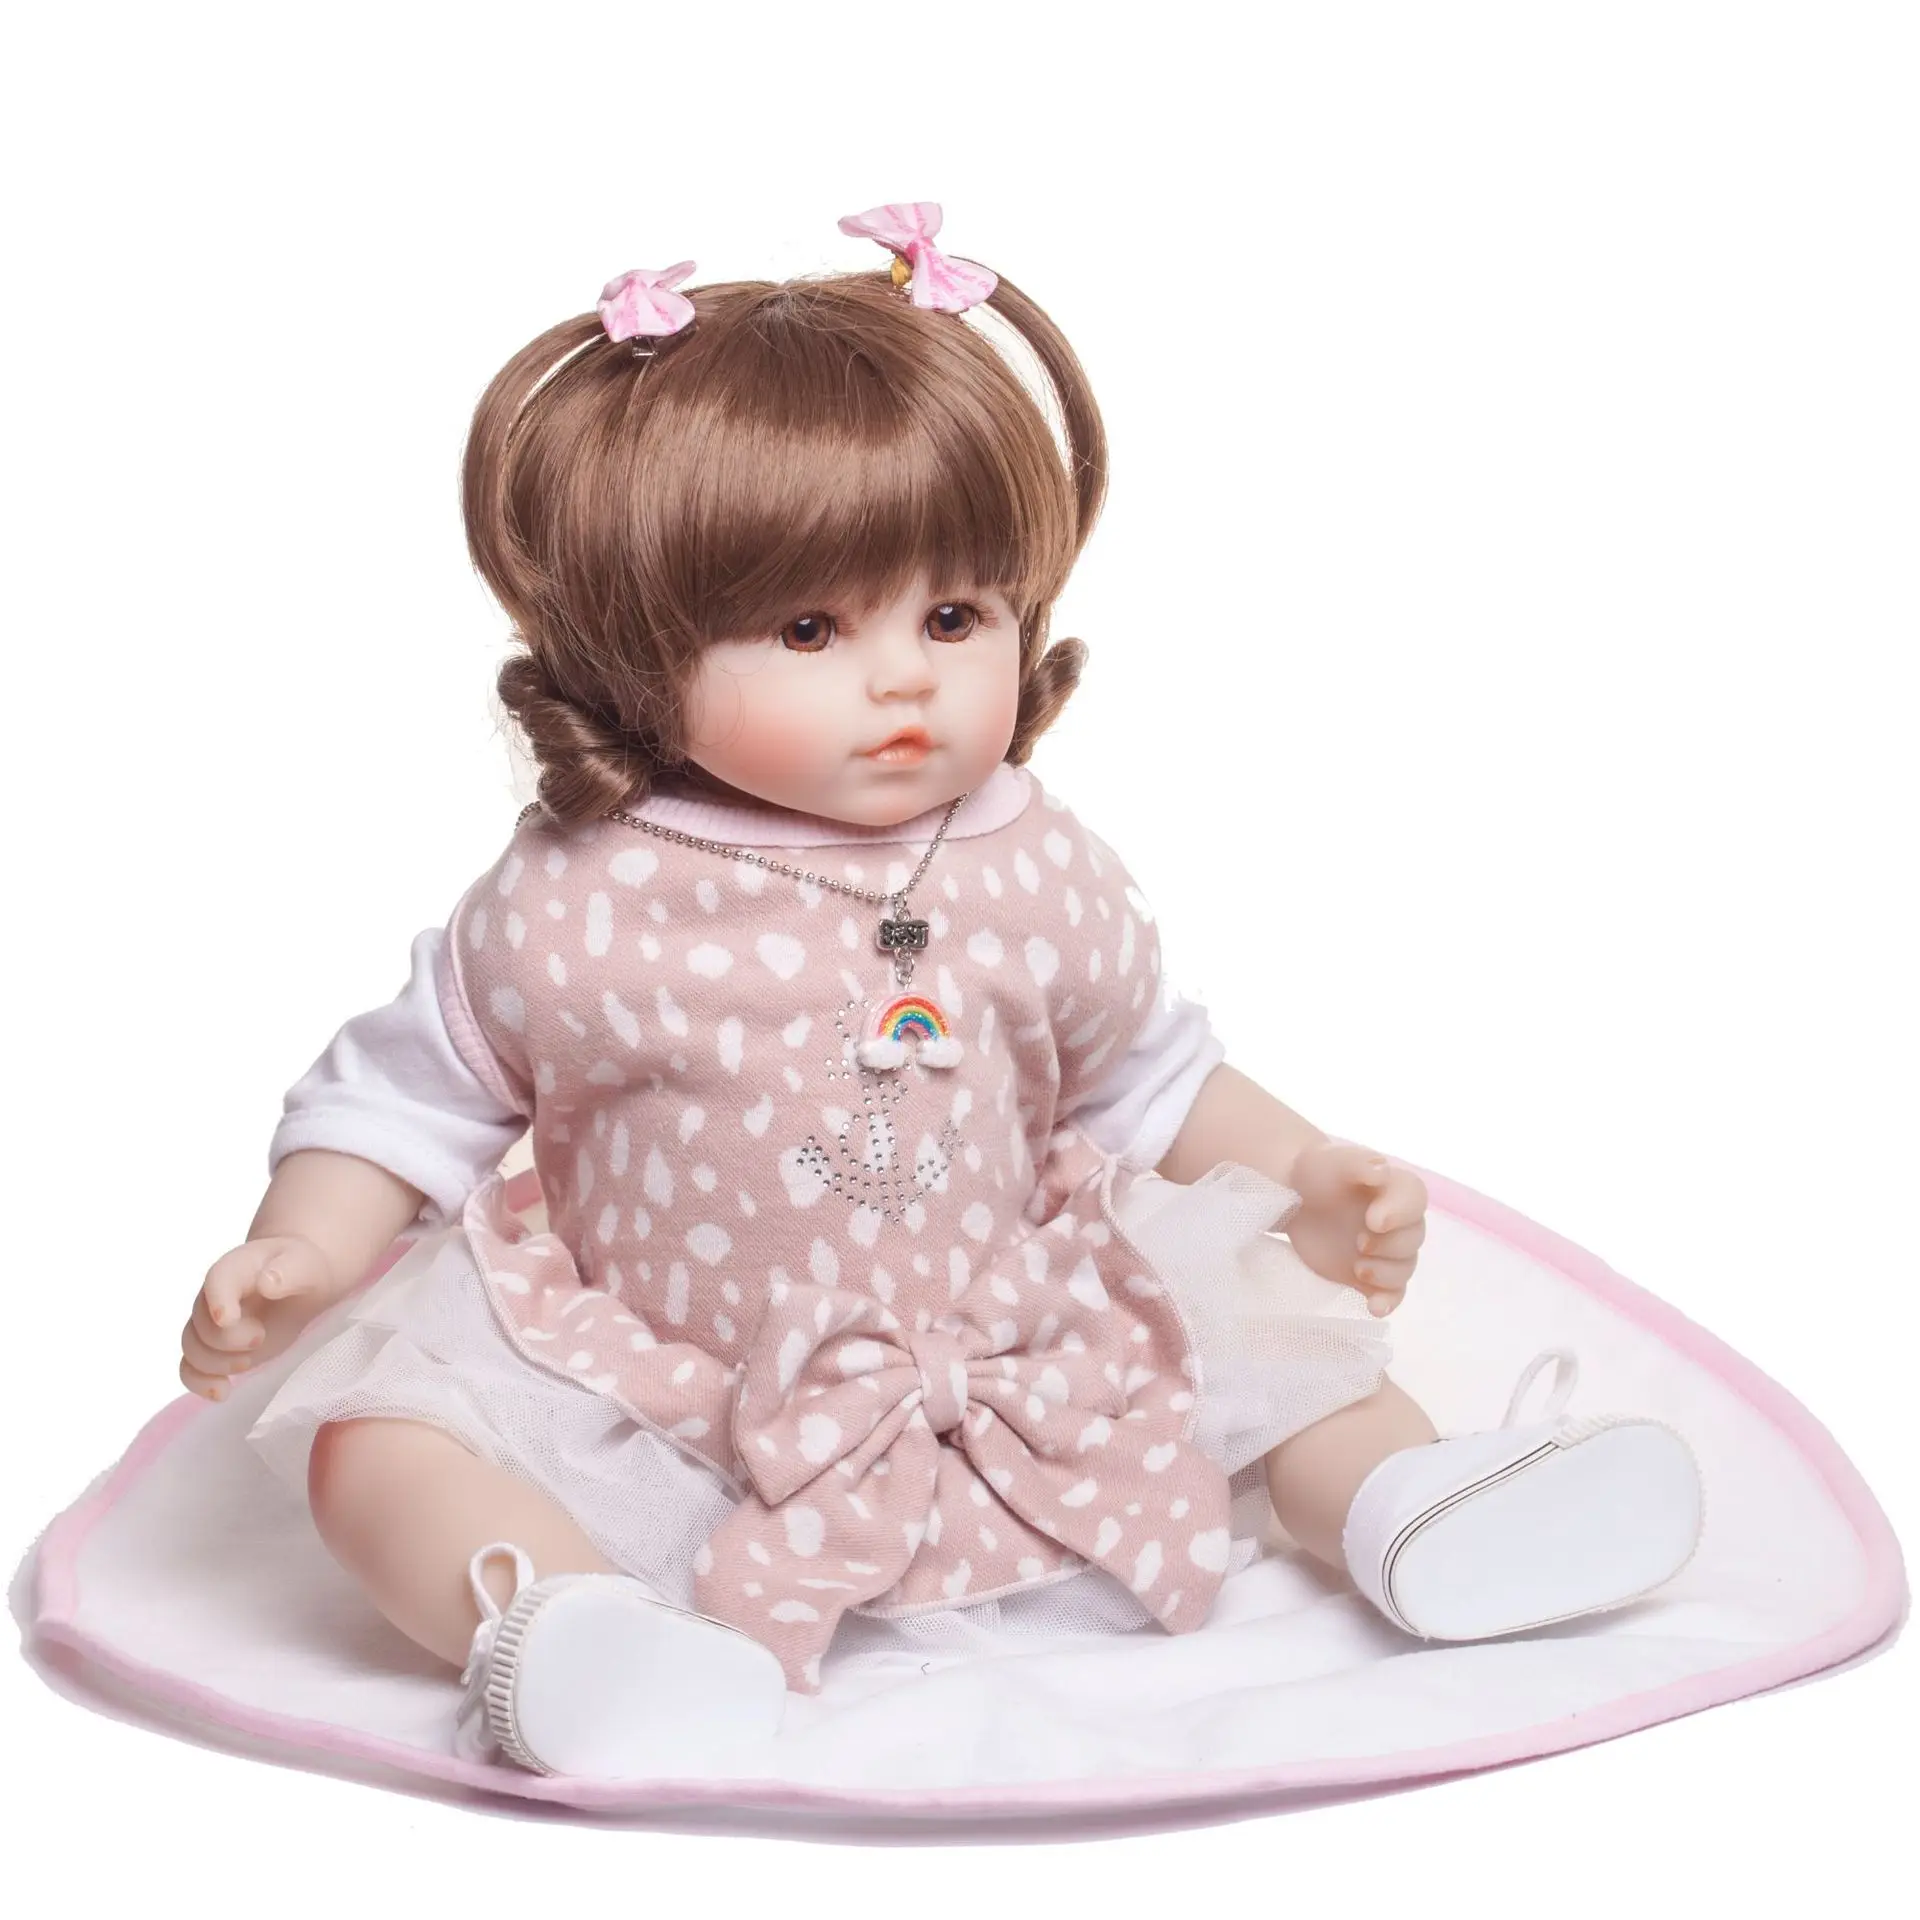 Pickwoo bebes кукла-реборн 48 см 55 см 57 см кукла для маленькой девочки мягкий силиконовый хлопок Boneca reborn Brinquedos Bonecas детские подарки